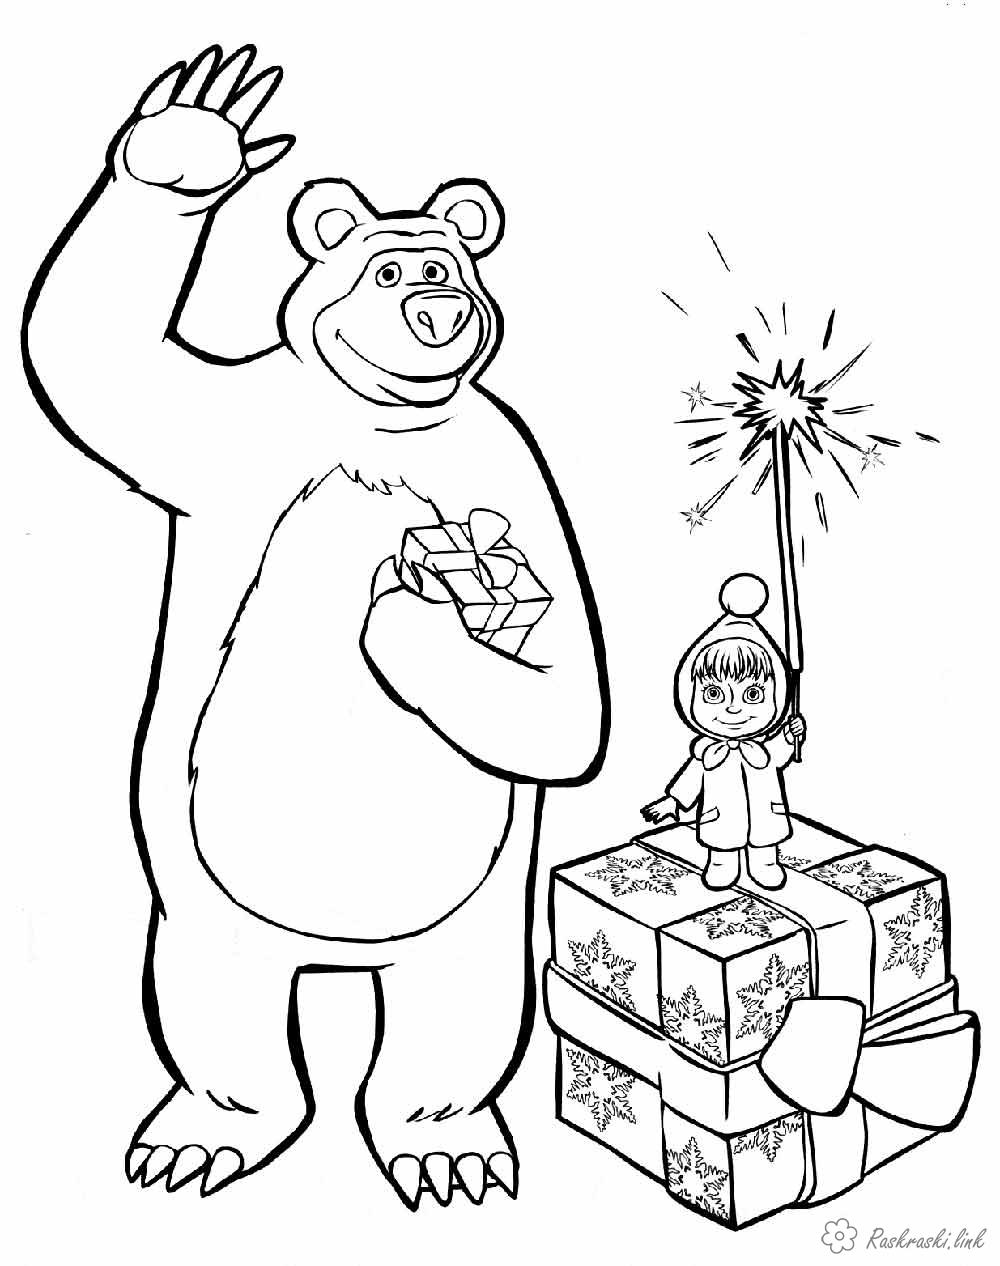 Розмальовки дітям розмальовки дітям, чорно-білі картинки, новий рік, свято, зима, маша и медведь